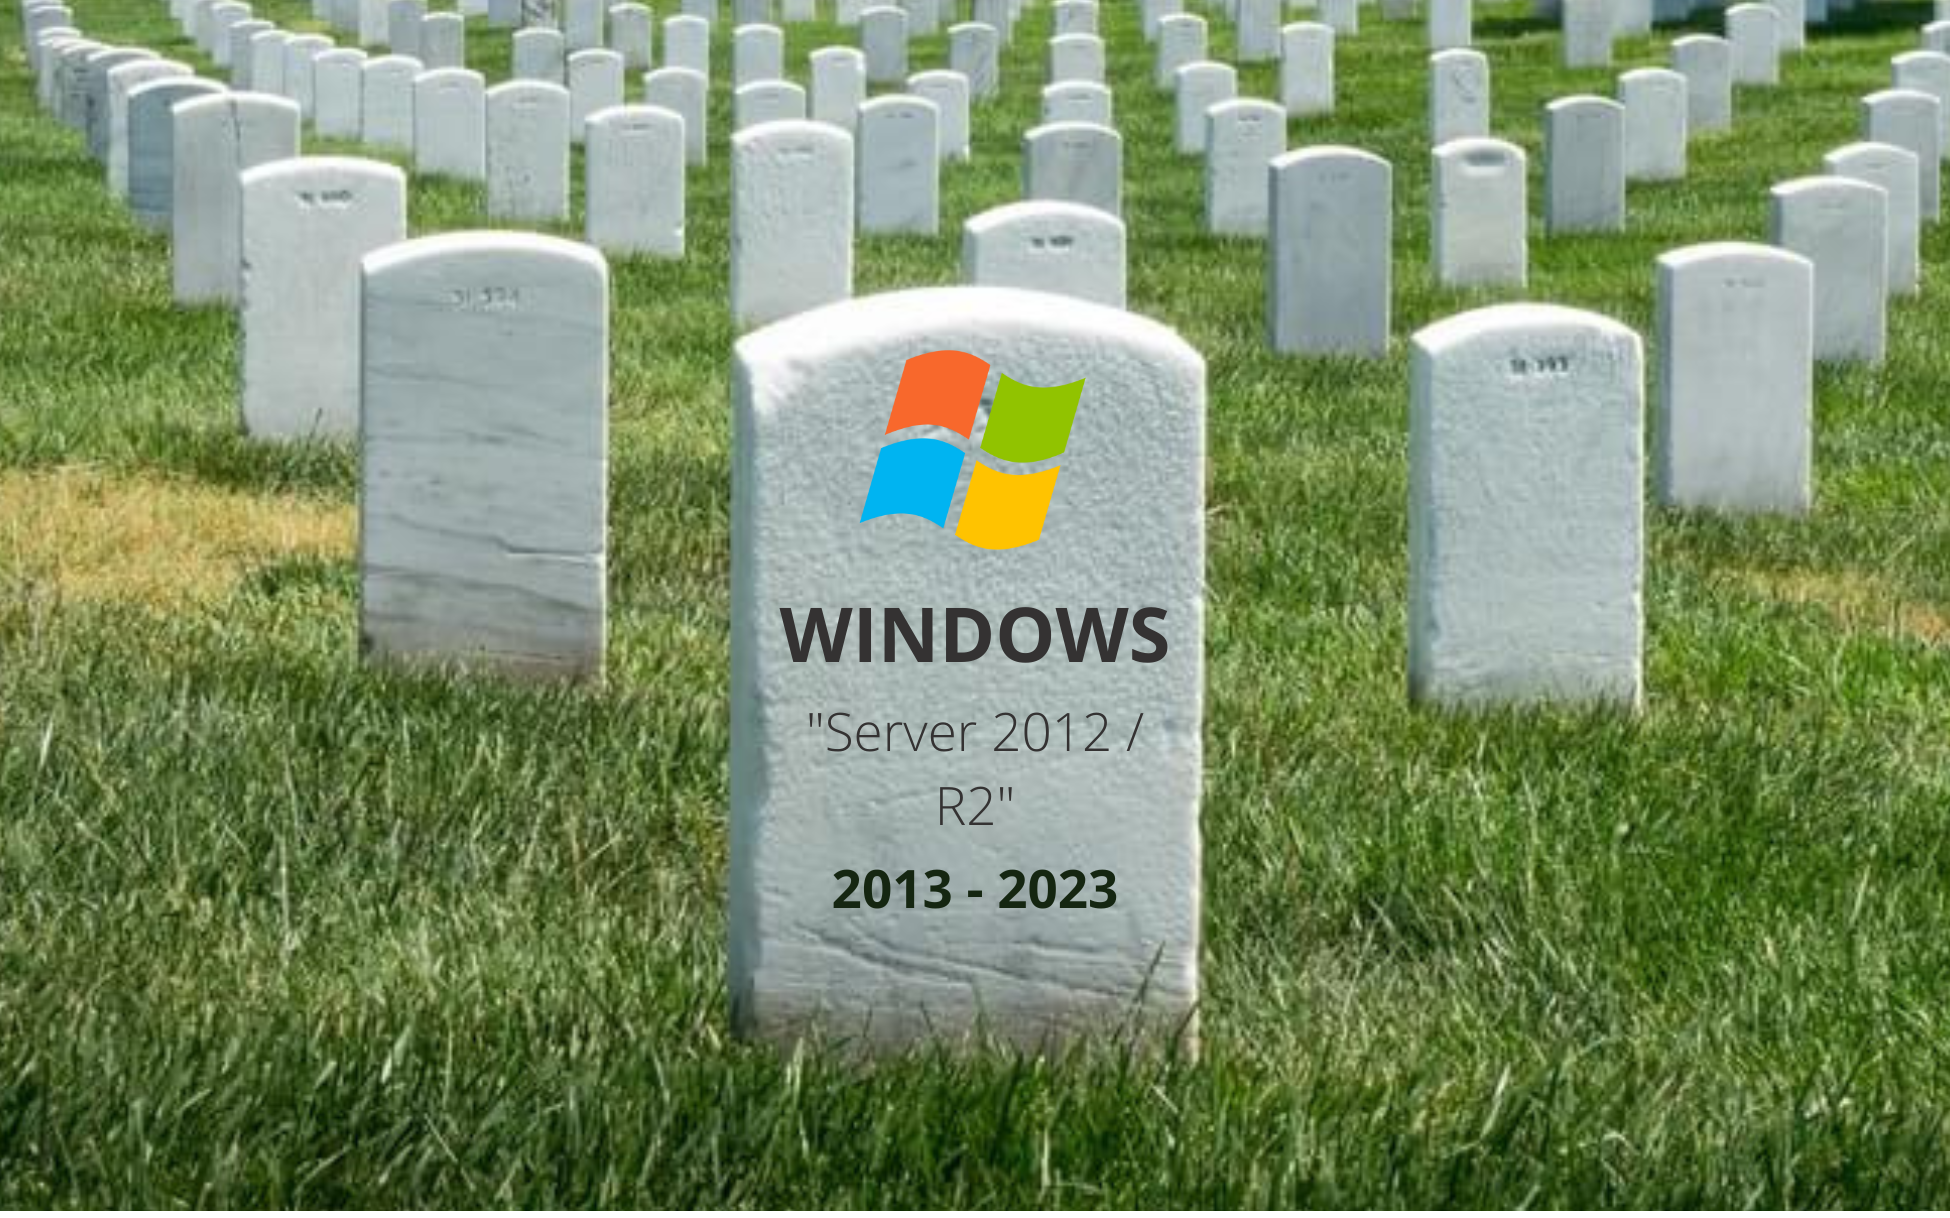 Final del soporte de windows server 2012